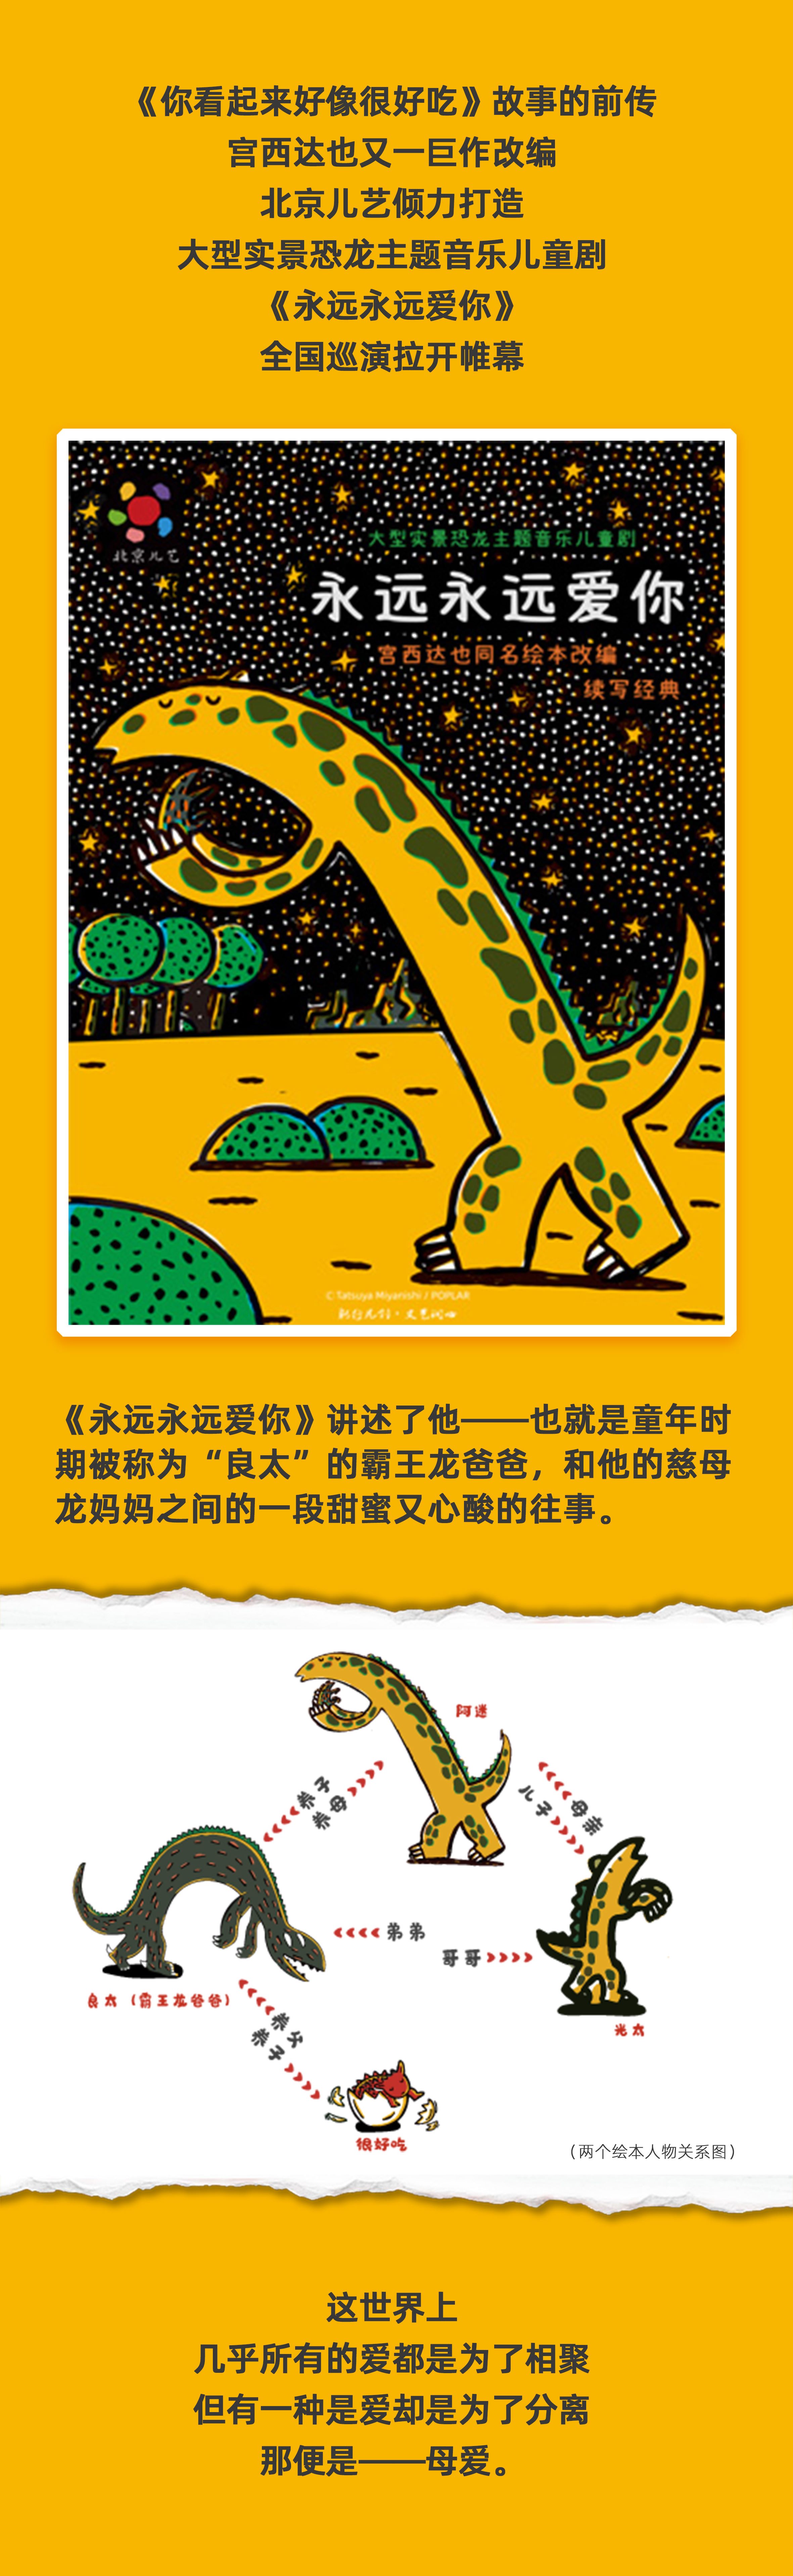 2022凡创文化·大型实景恐龙主题音乐儿童剧《永远永远爱你》-重庆站